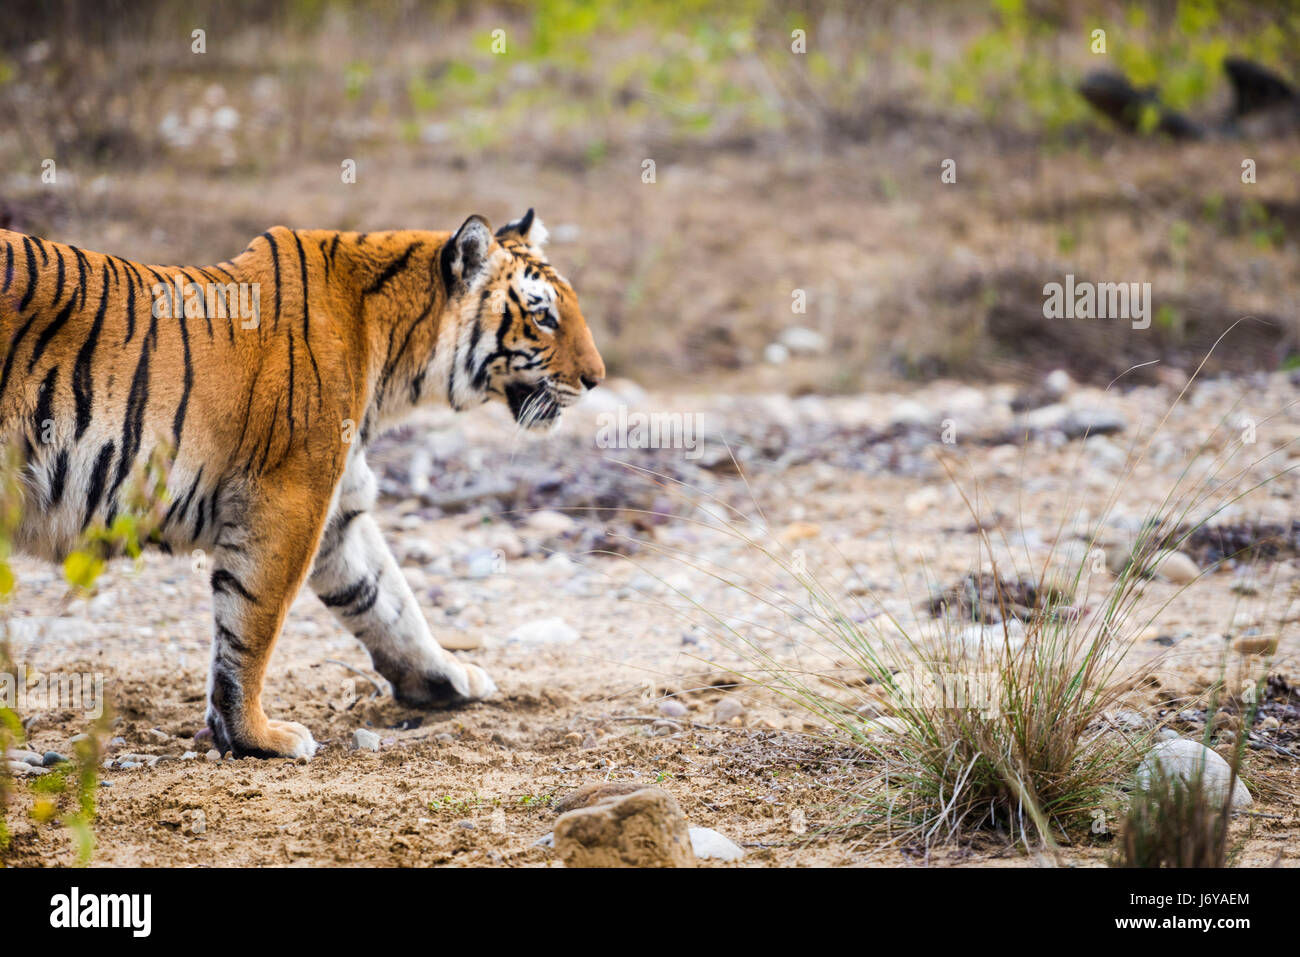 Tiger closeups Stock Photo